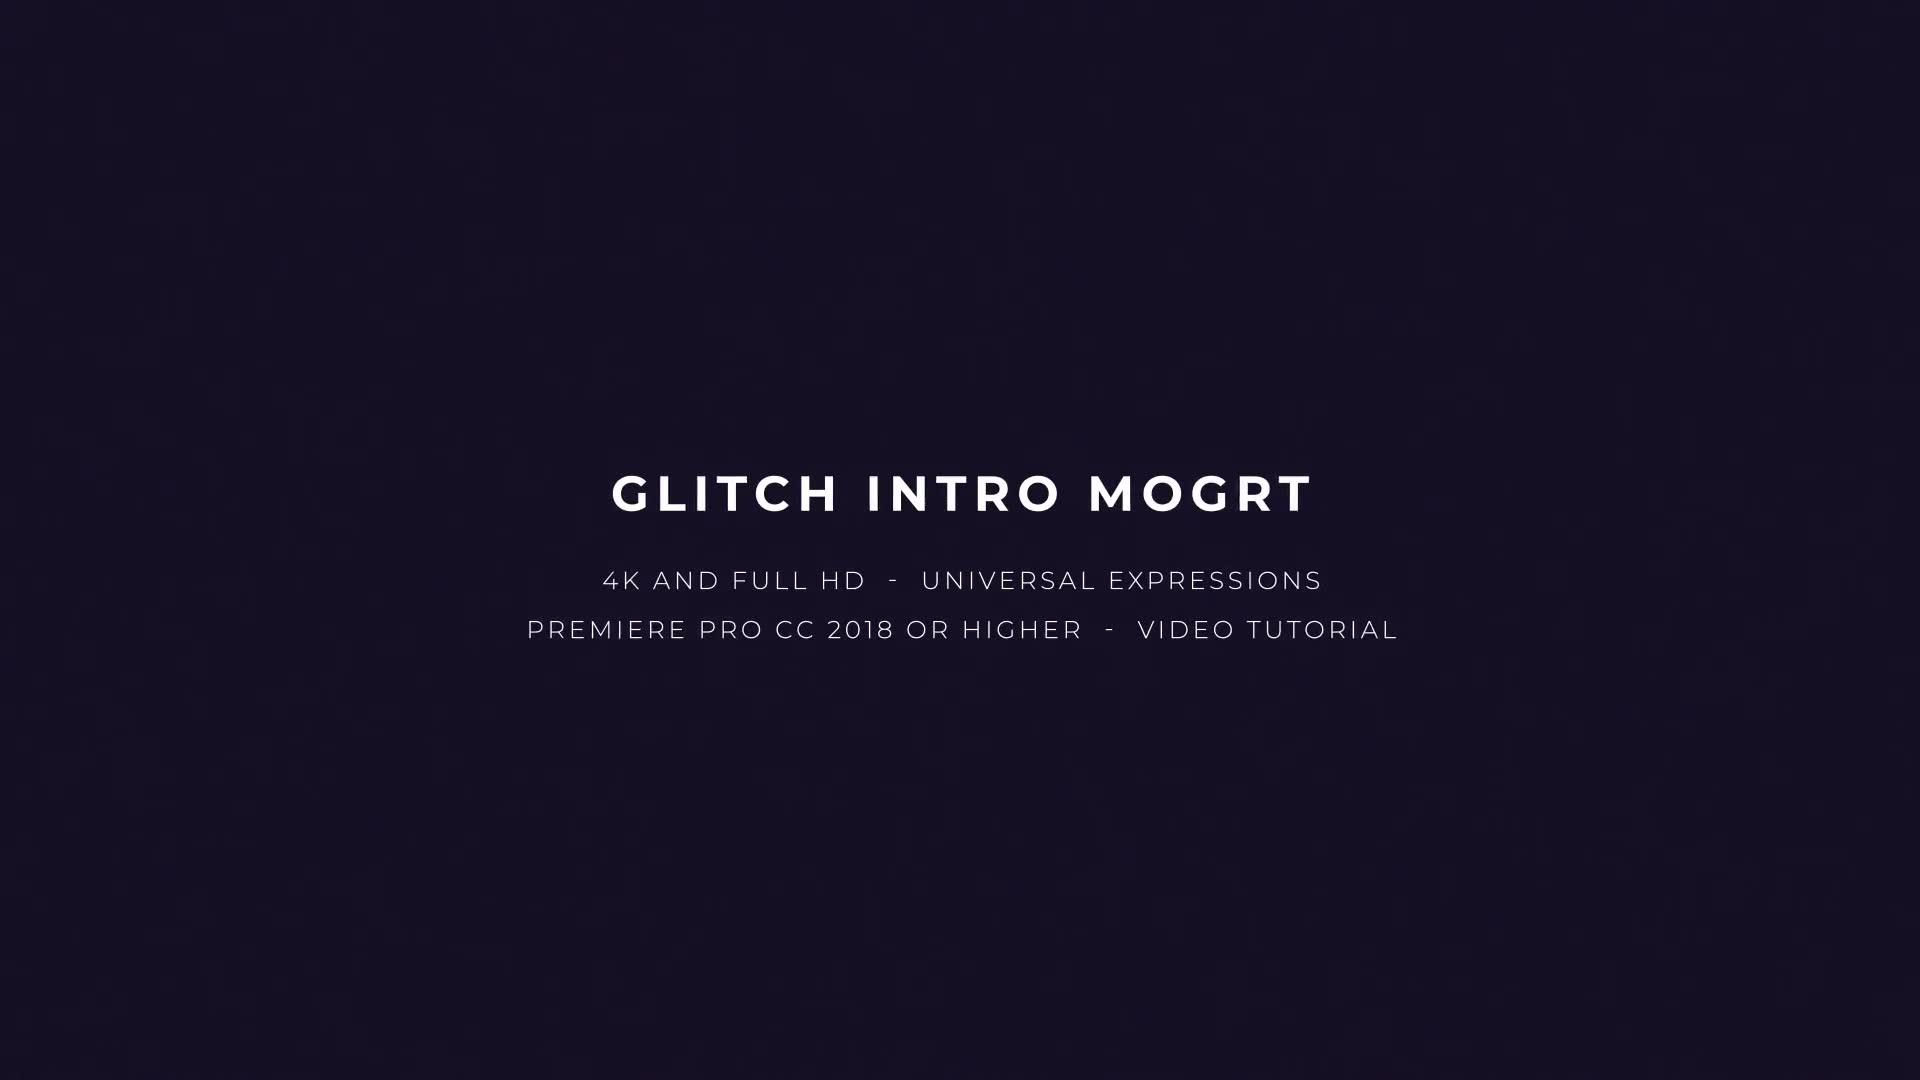 Glitch Intro Mogrt Videohive 22698598 Premiere Pro Image 2